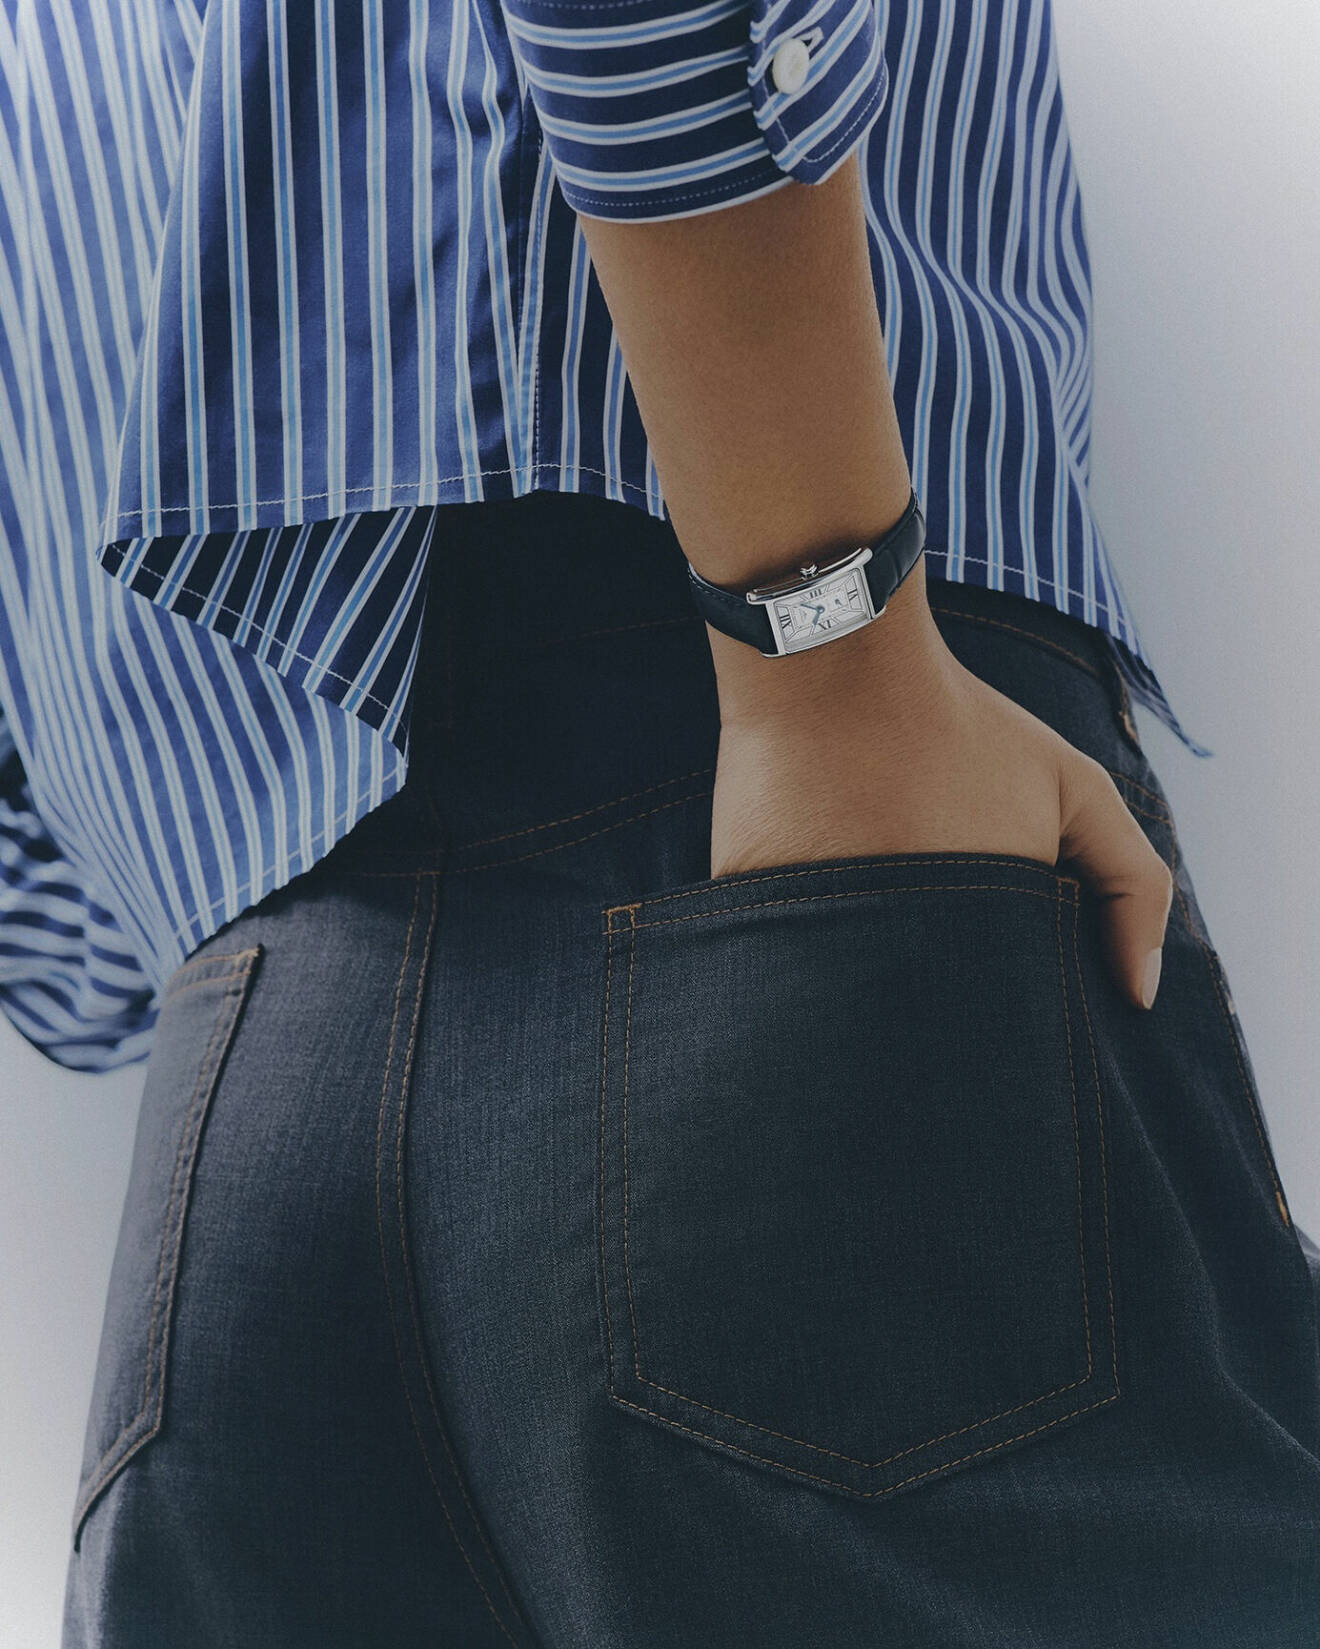 Modellen har på sig en randig skjorta i blått och jeans, båda från Miu Miu/Mytheresa. Hon har handen i backfickan och bär en klocka från Longines.